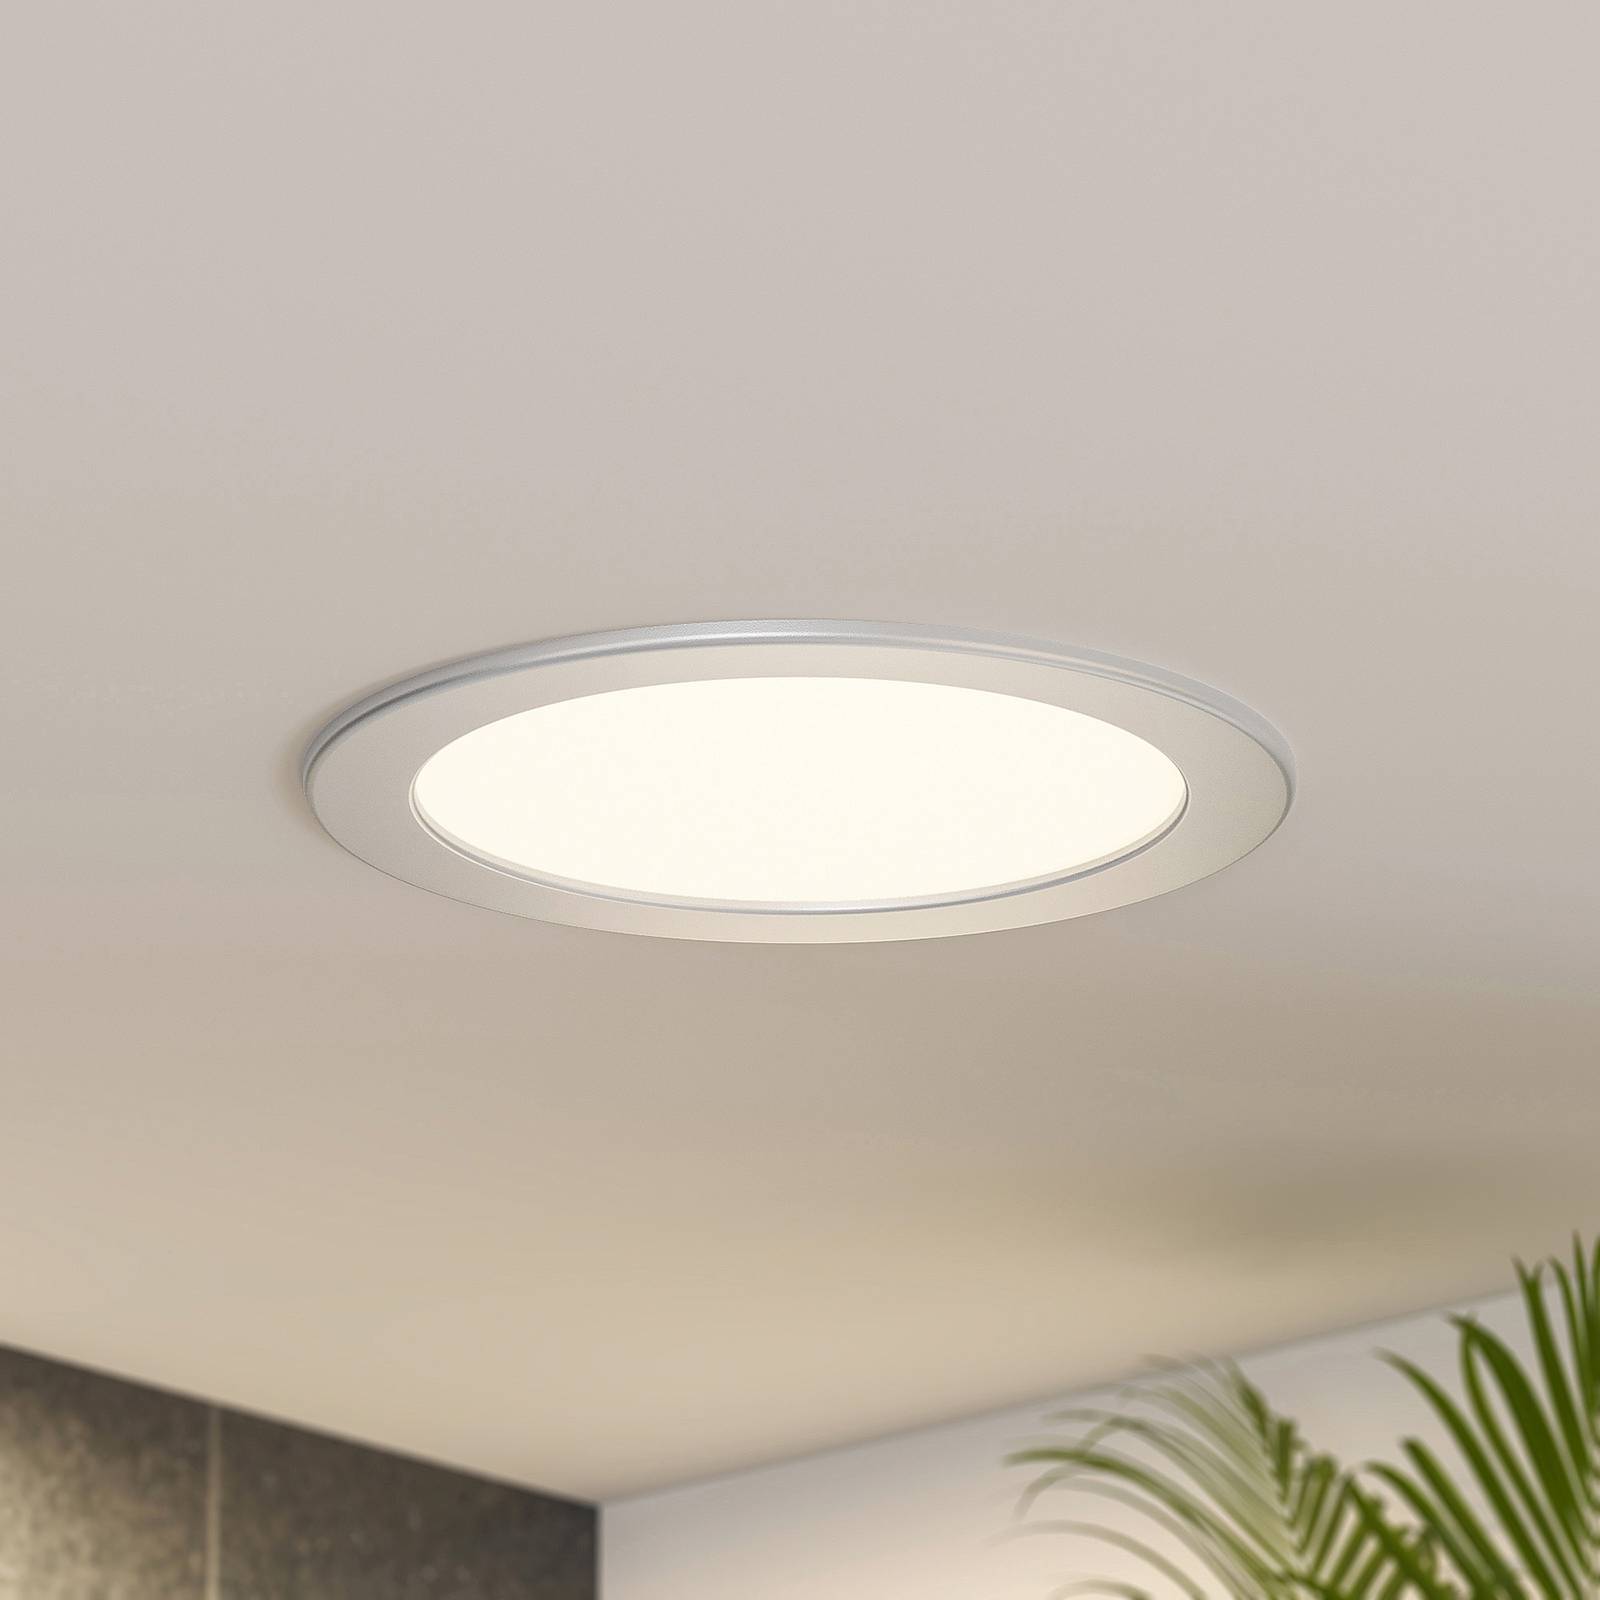 Image of Prios Cadance lampe encastrée LED argent 22cm x3 